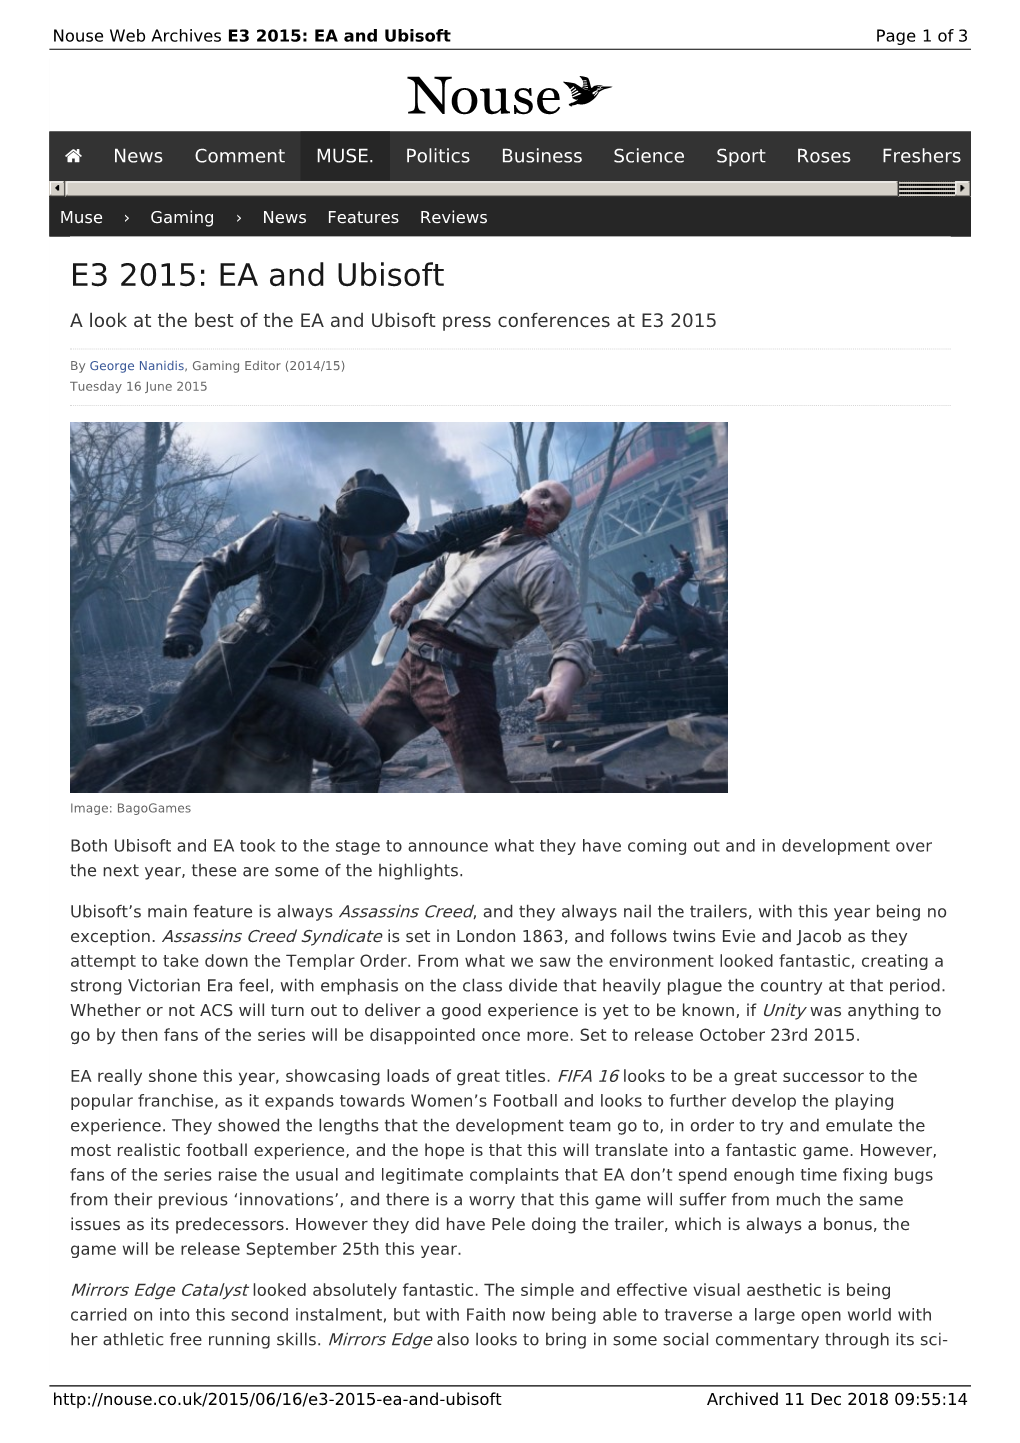 E3 2015: EA and Ubisoft | Nouse